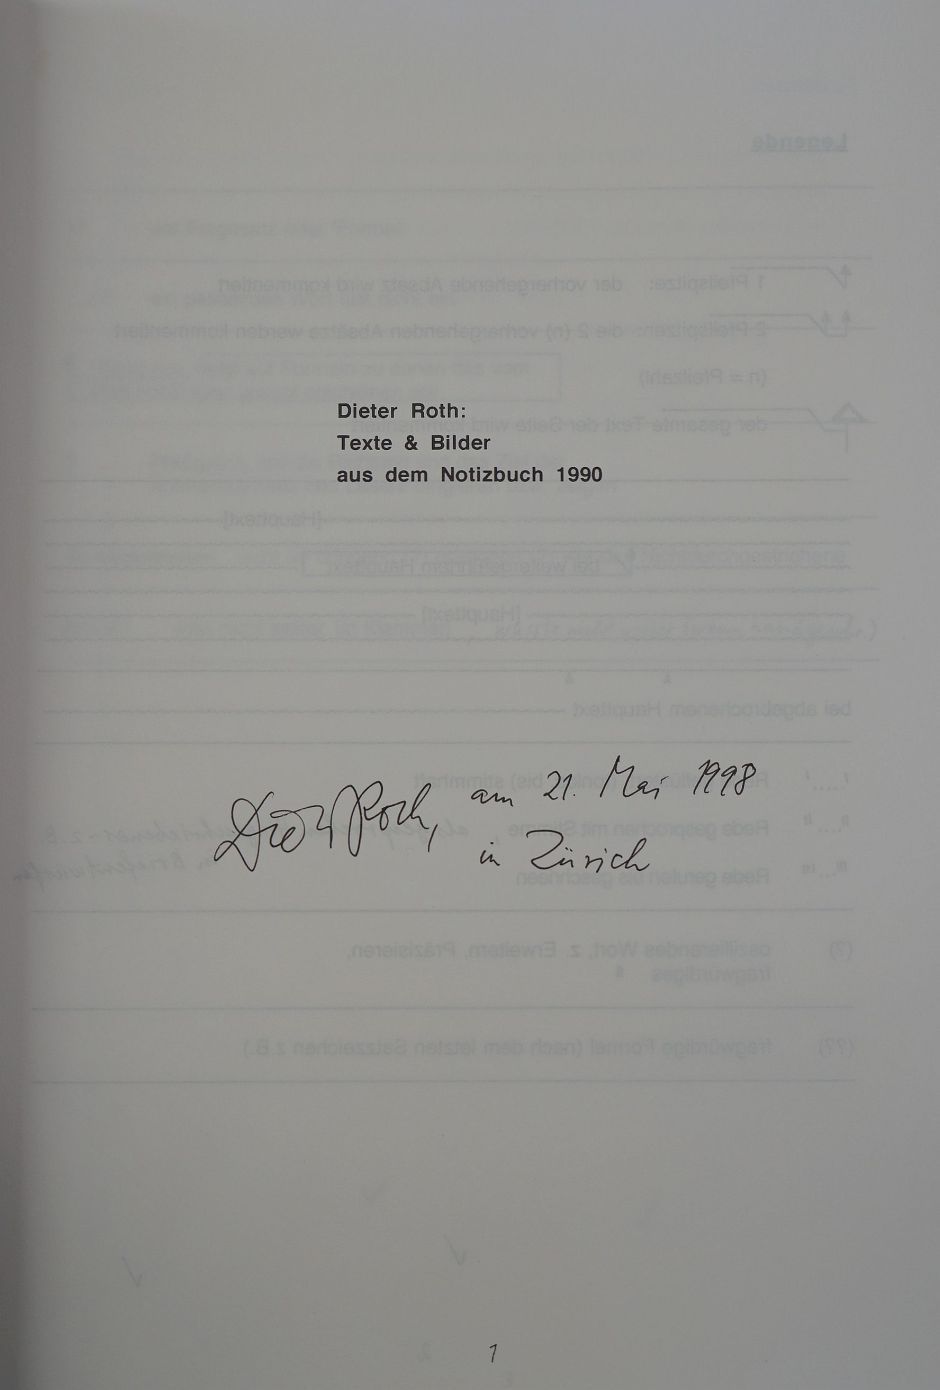 Lot 3385, Auction  115, Roth, Dieter, Texte & Bilder aus dem Notizbuch 1990